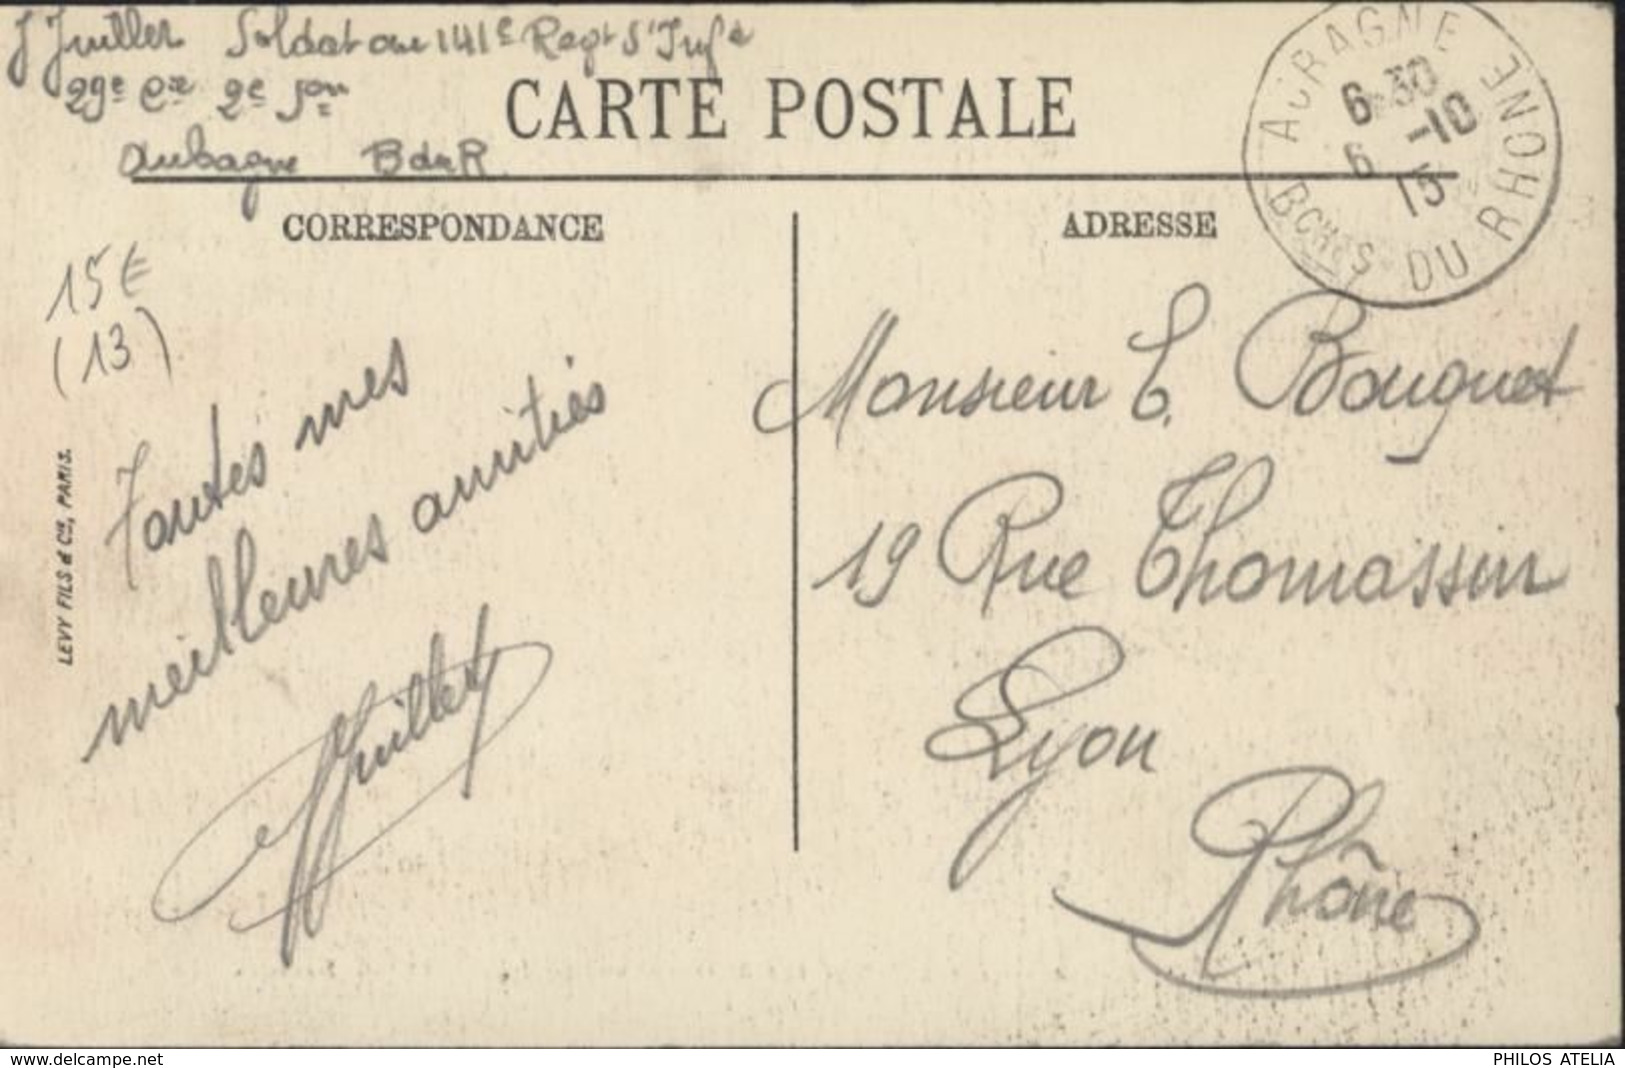 CPA Aubagne Vue Générale Les Usines Et Pic Garlaban 35 LL Selecta FM 141e Régiment Infanterie CAD 6 10 1915 - Aubagne